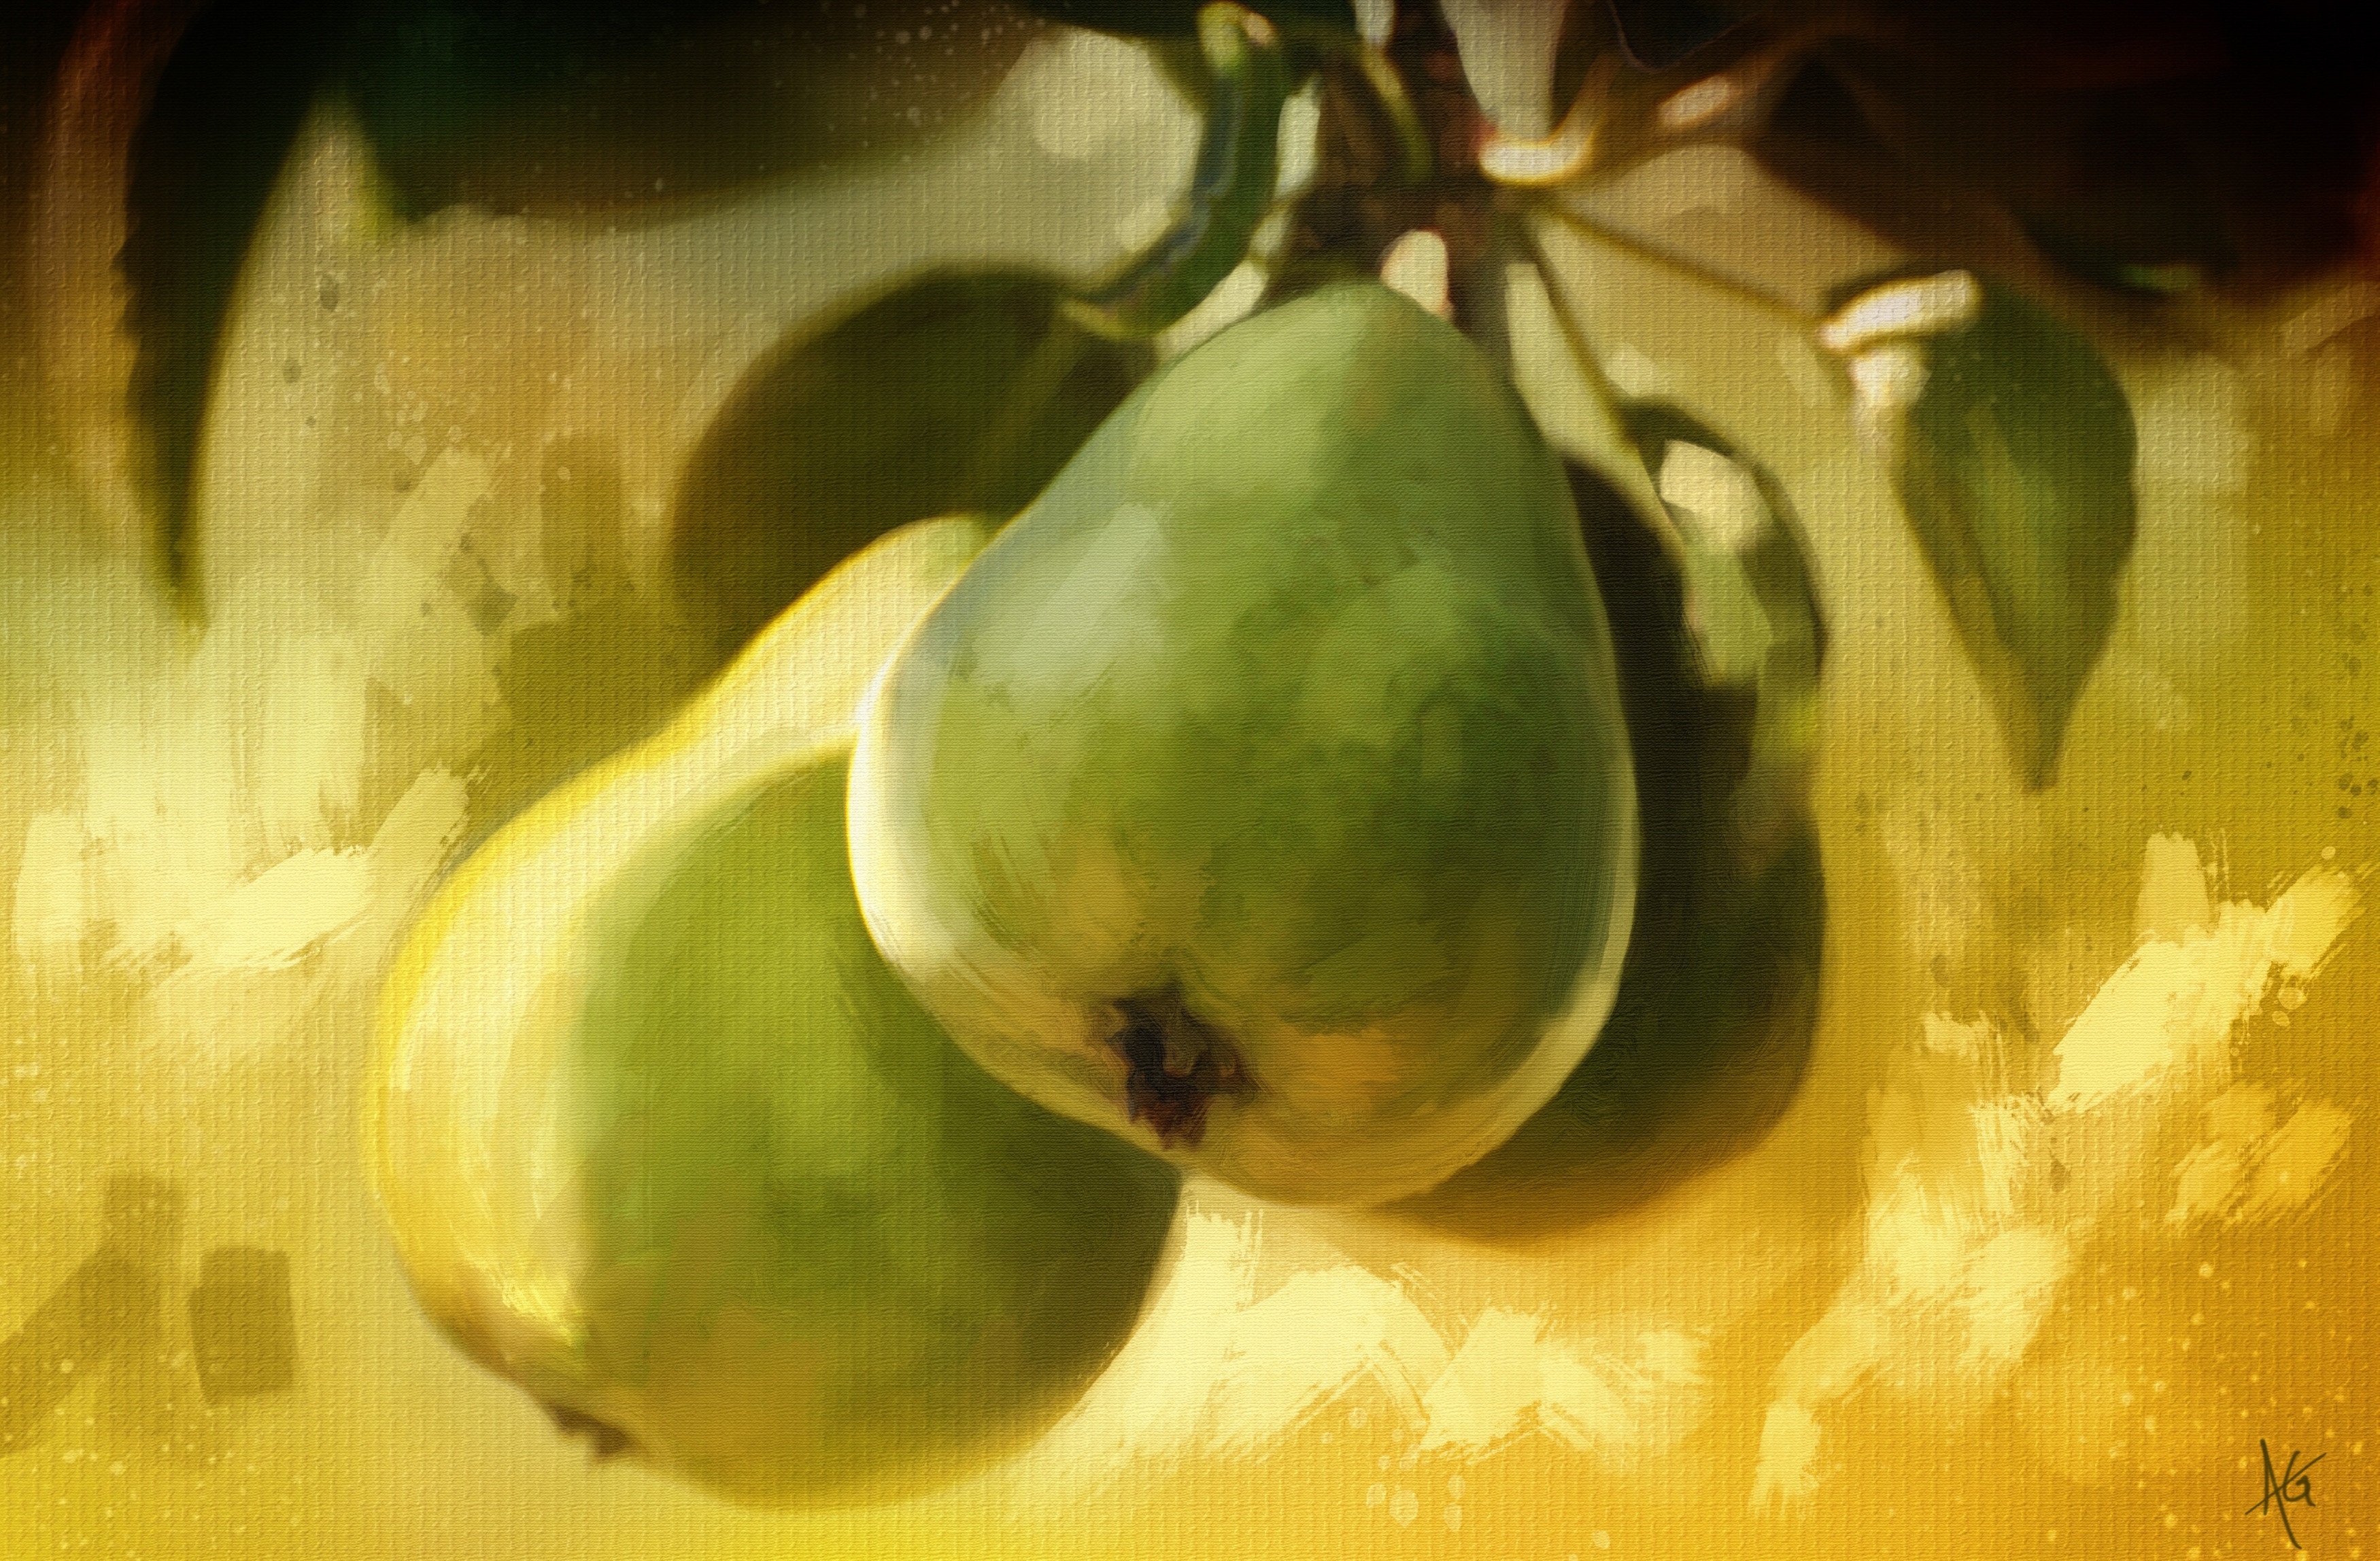 Pear Art